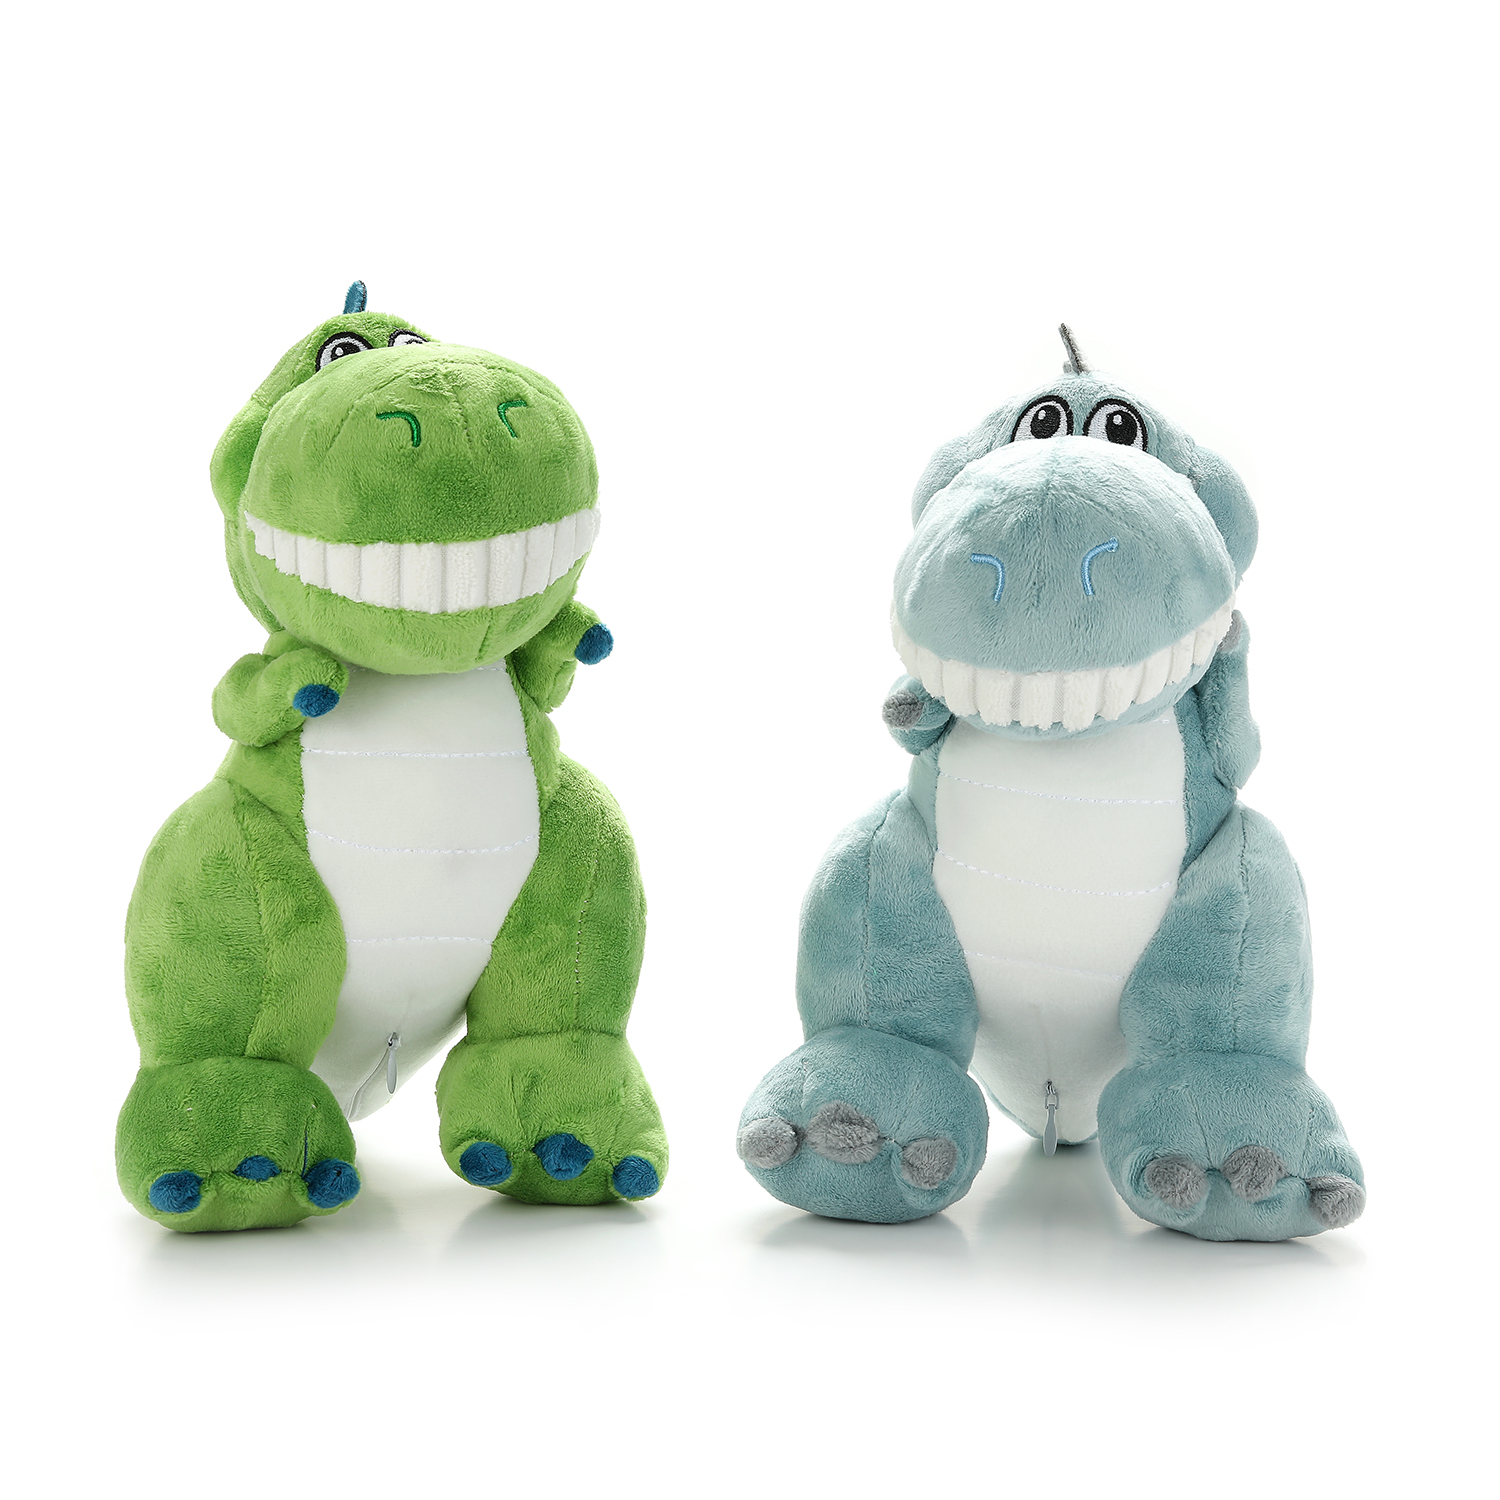 Las mejores ventas de juguetes de peluche, juguetes blandos de tiranosaurio 